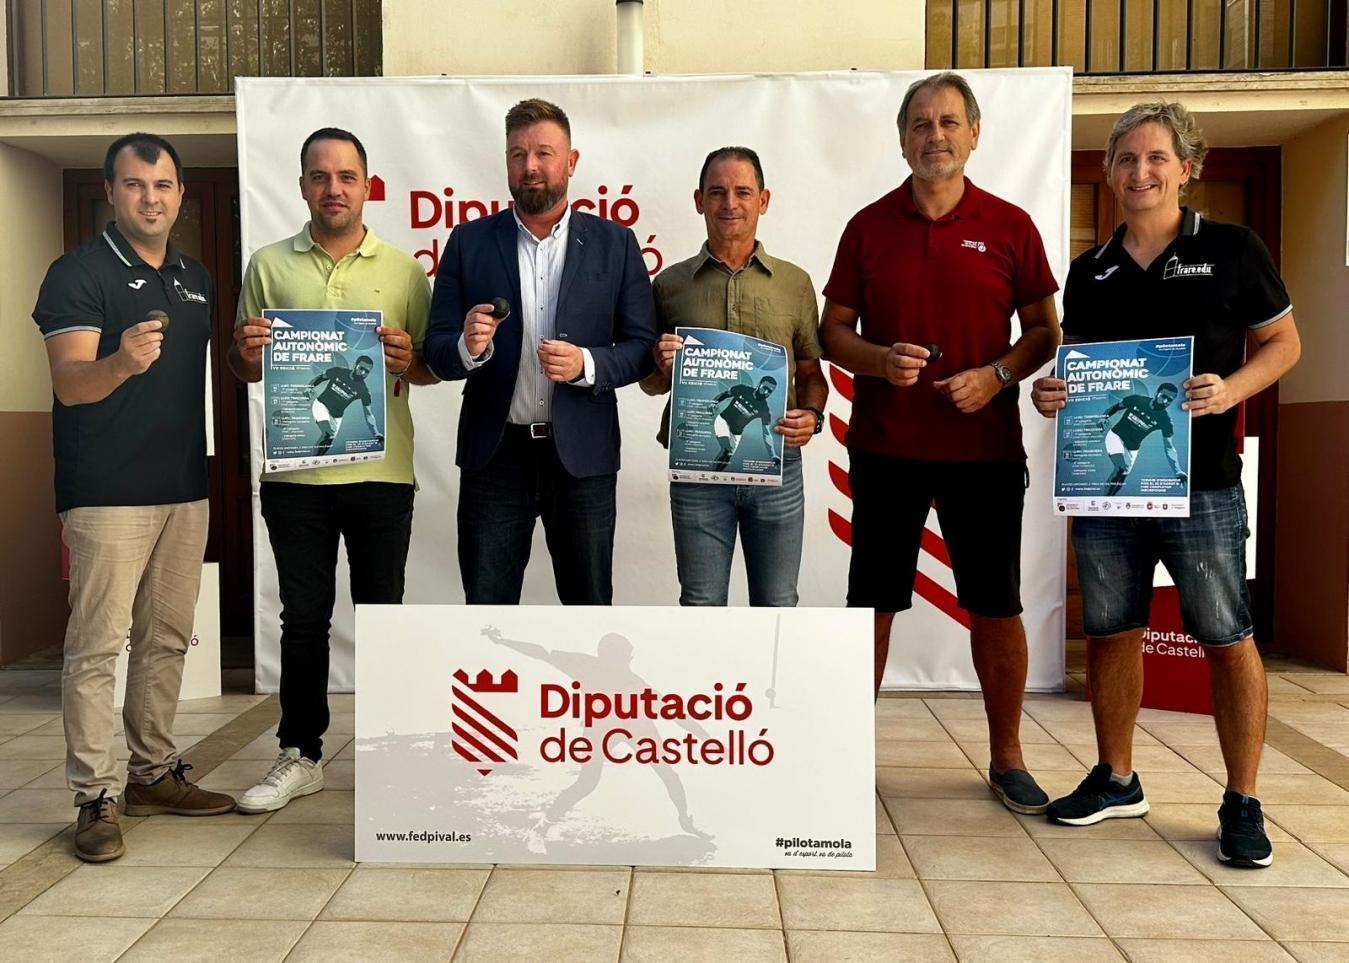 La Diputació de Castelló acull la presentació del VII Campionat Autonòmic de Frare